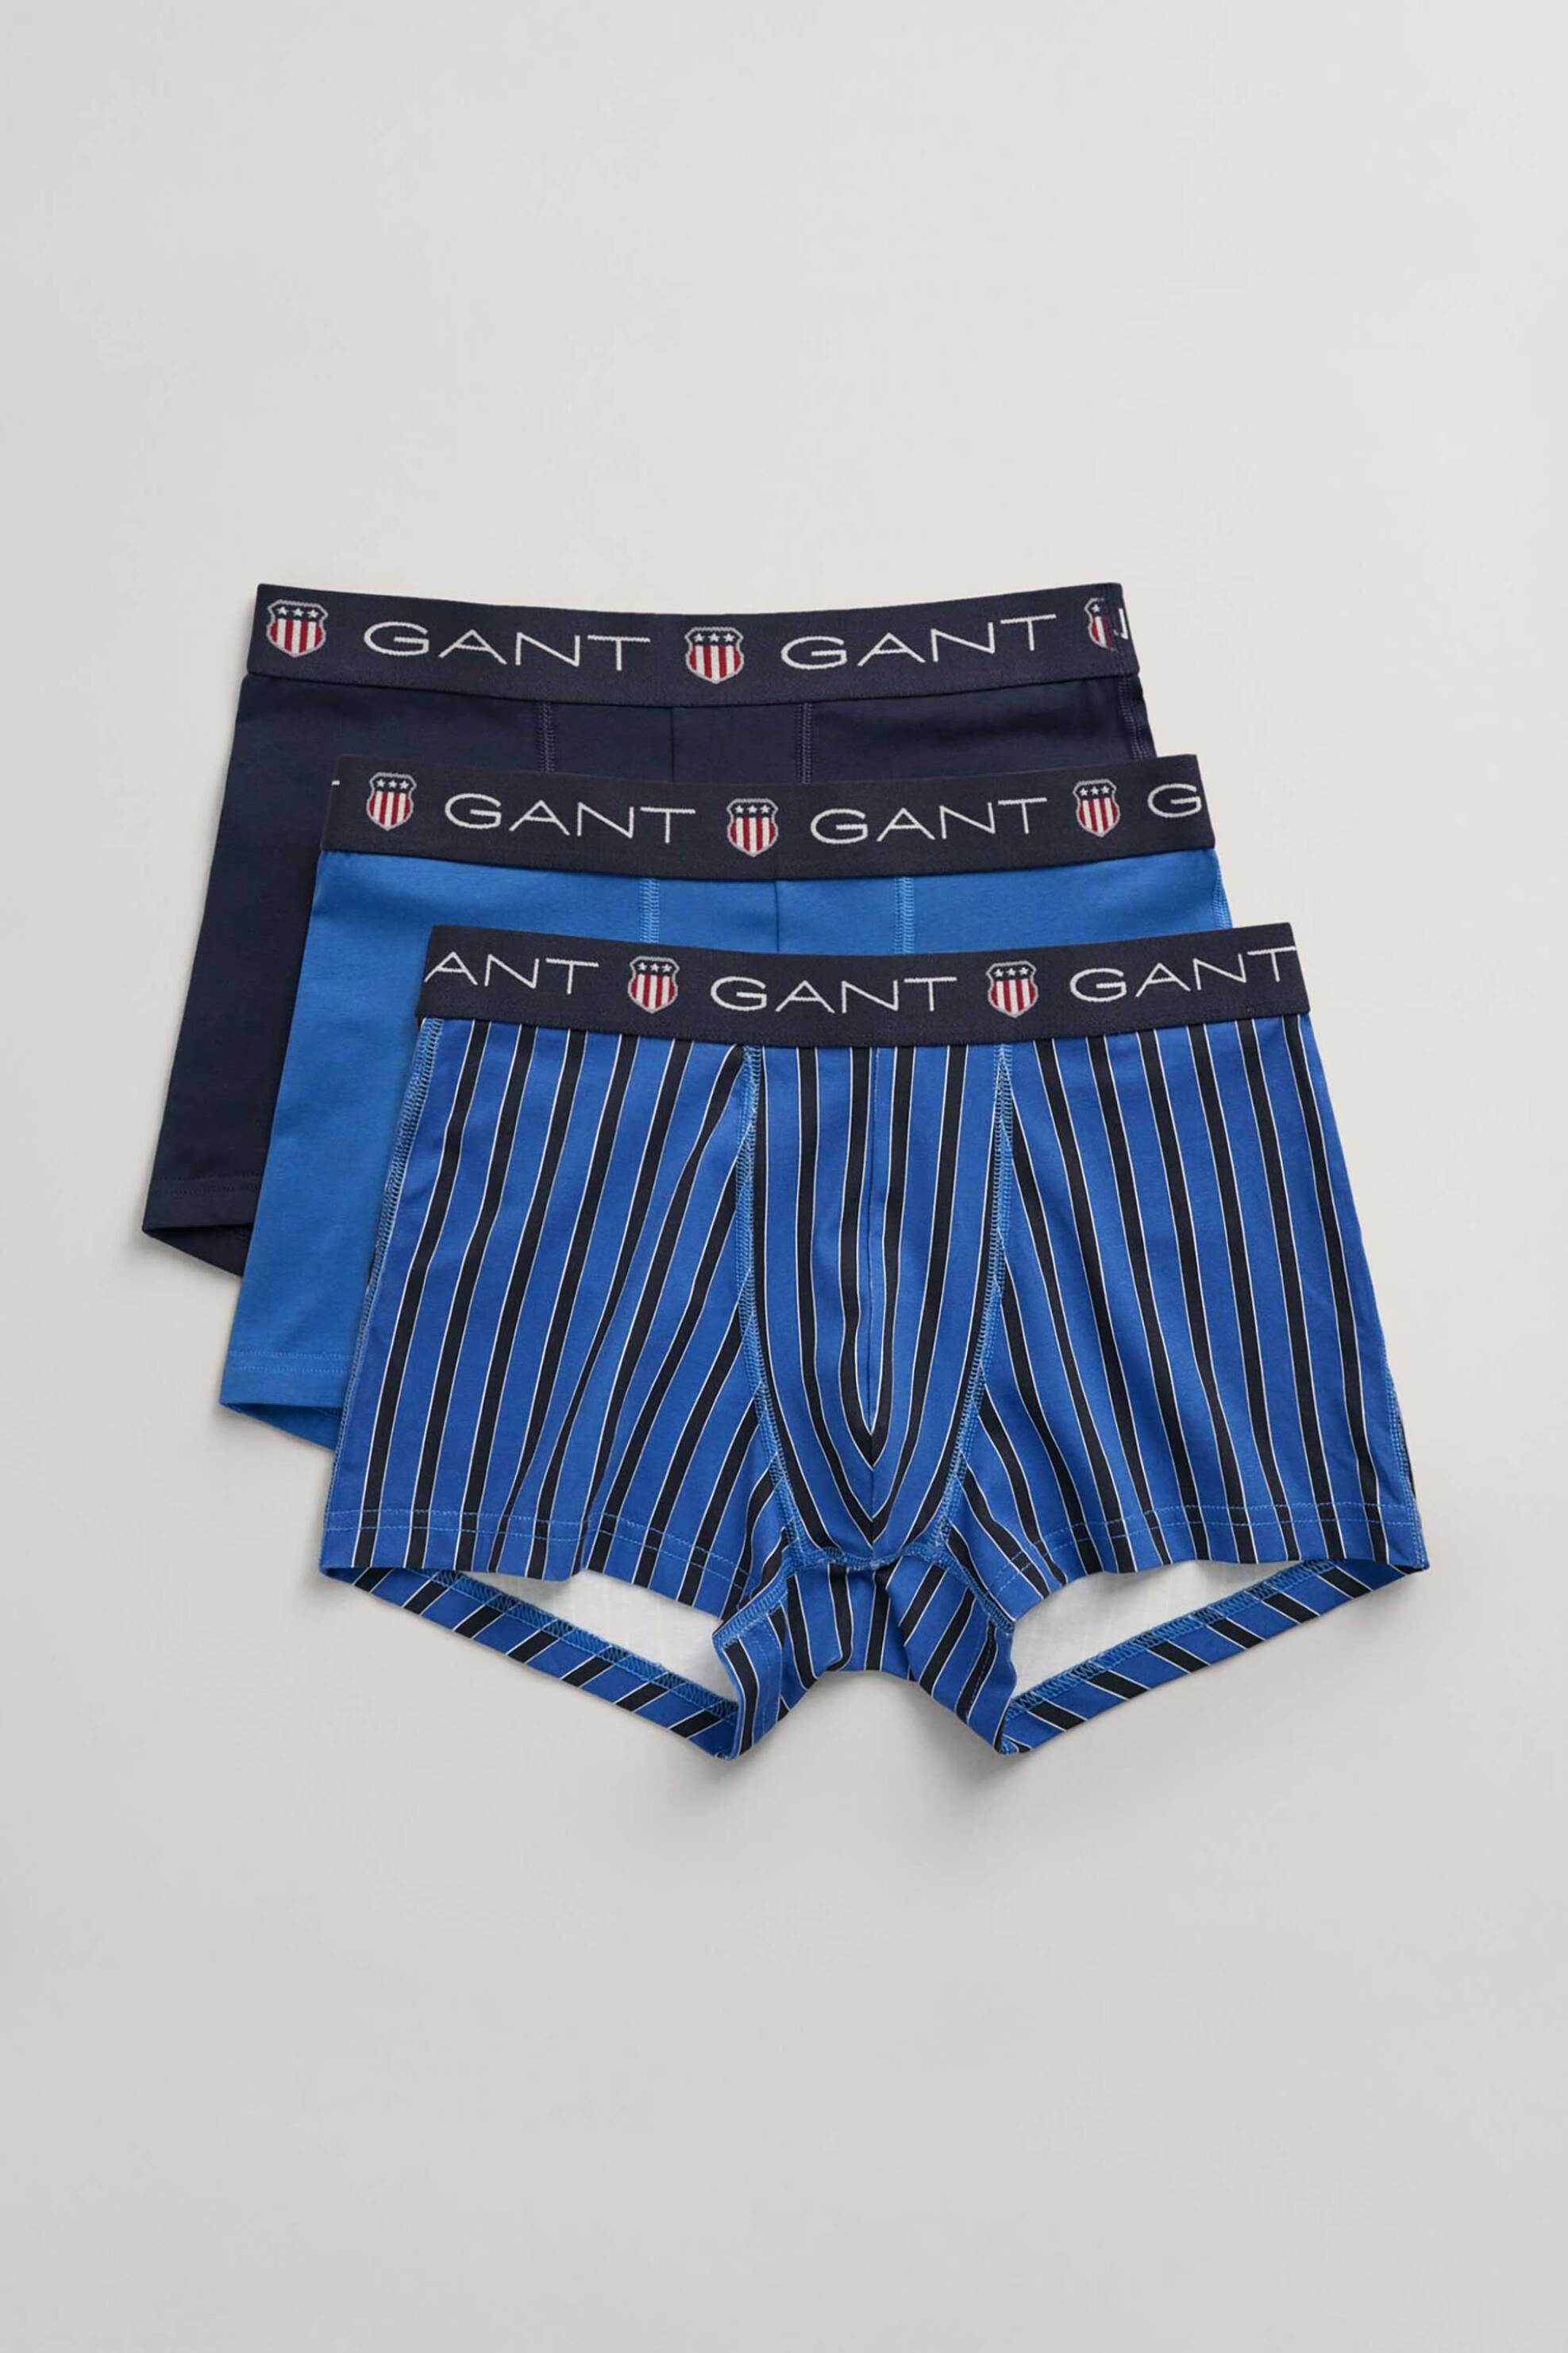 Ανδρική Μόδα > Ανδρικά Ρούχα > Ανδρικά Εσώρουχα > Ανδρικά Εσώρουχα Σετ Gant σετ ανδρικά εσώρουχα trunk με λογότυπο Slim Fit (3 τεμάχια) - 902413073 Μπλε